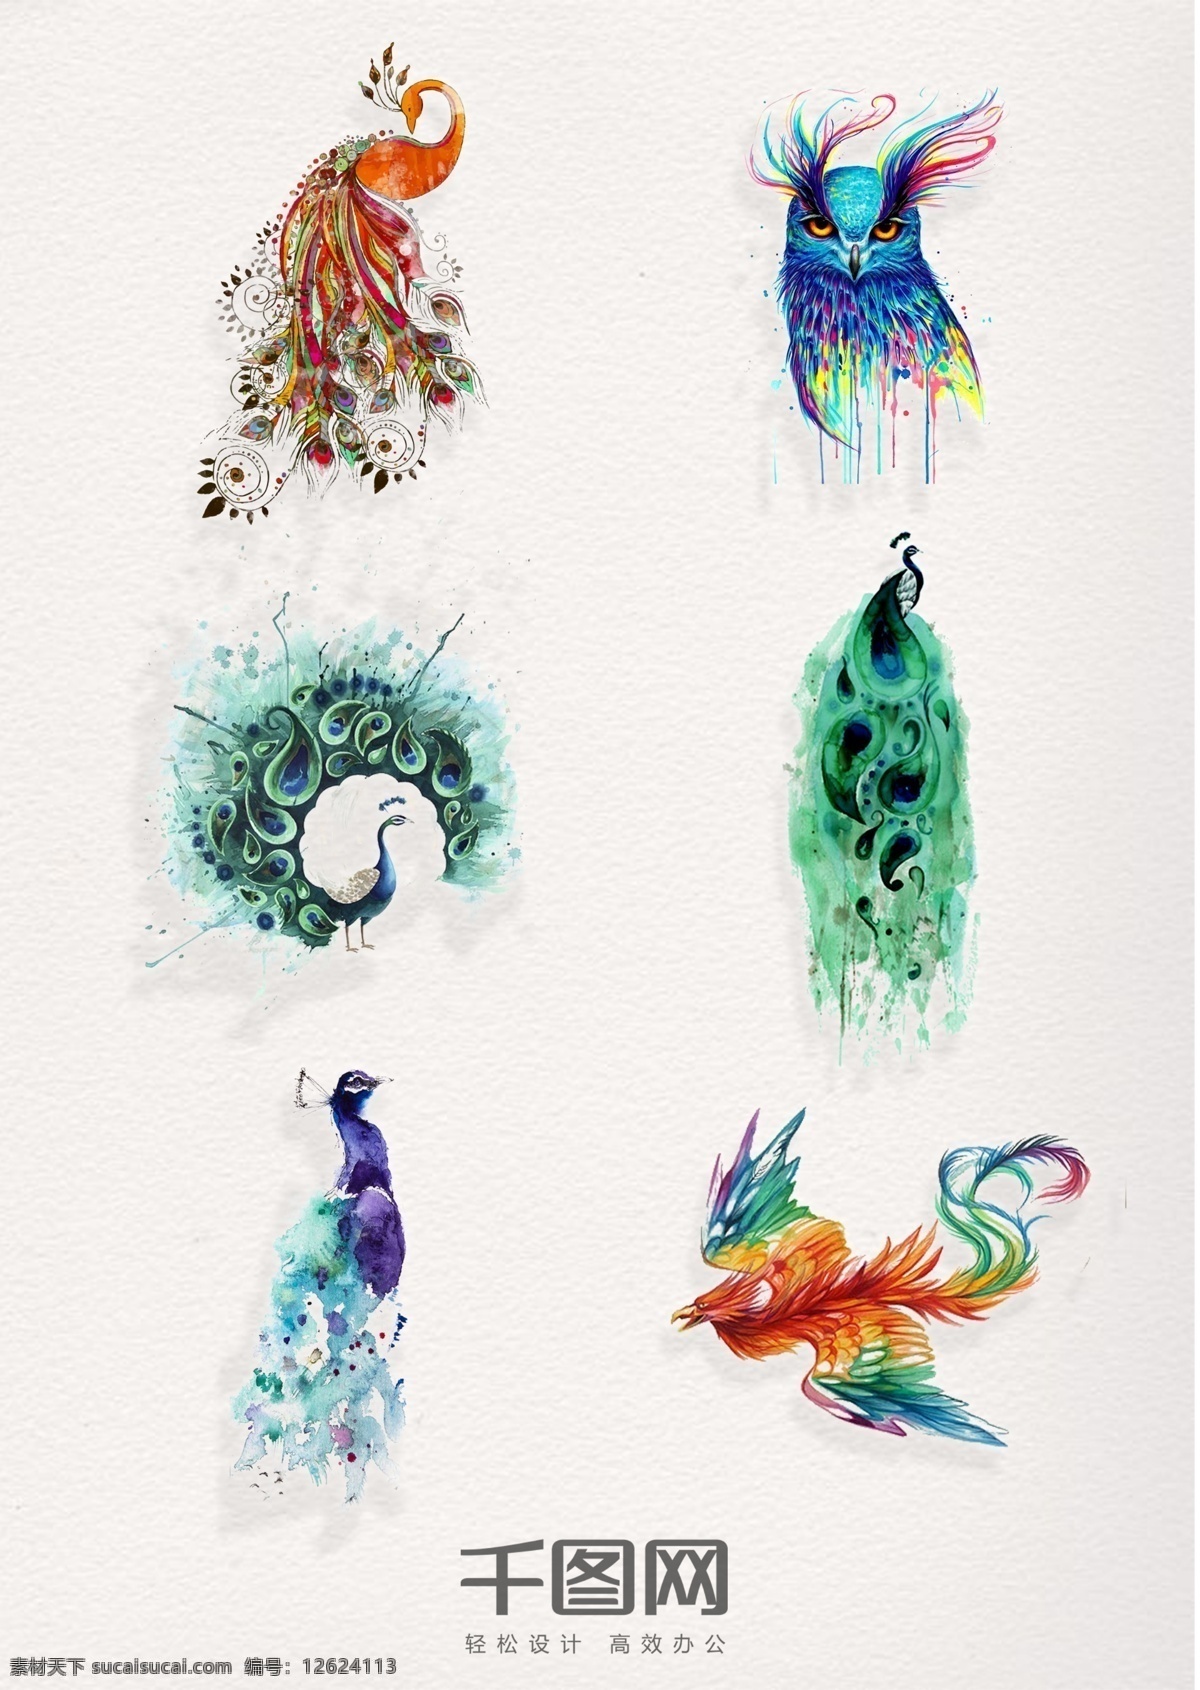 组 精美 水彩 动物 飞鸟 设计素材 手绘 翅膀 插画 psd素材 可爱